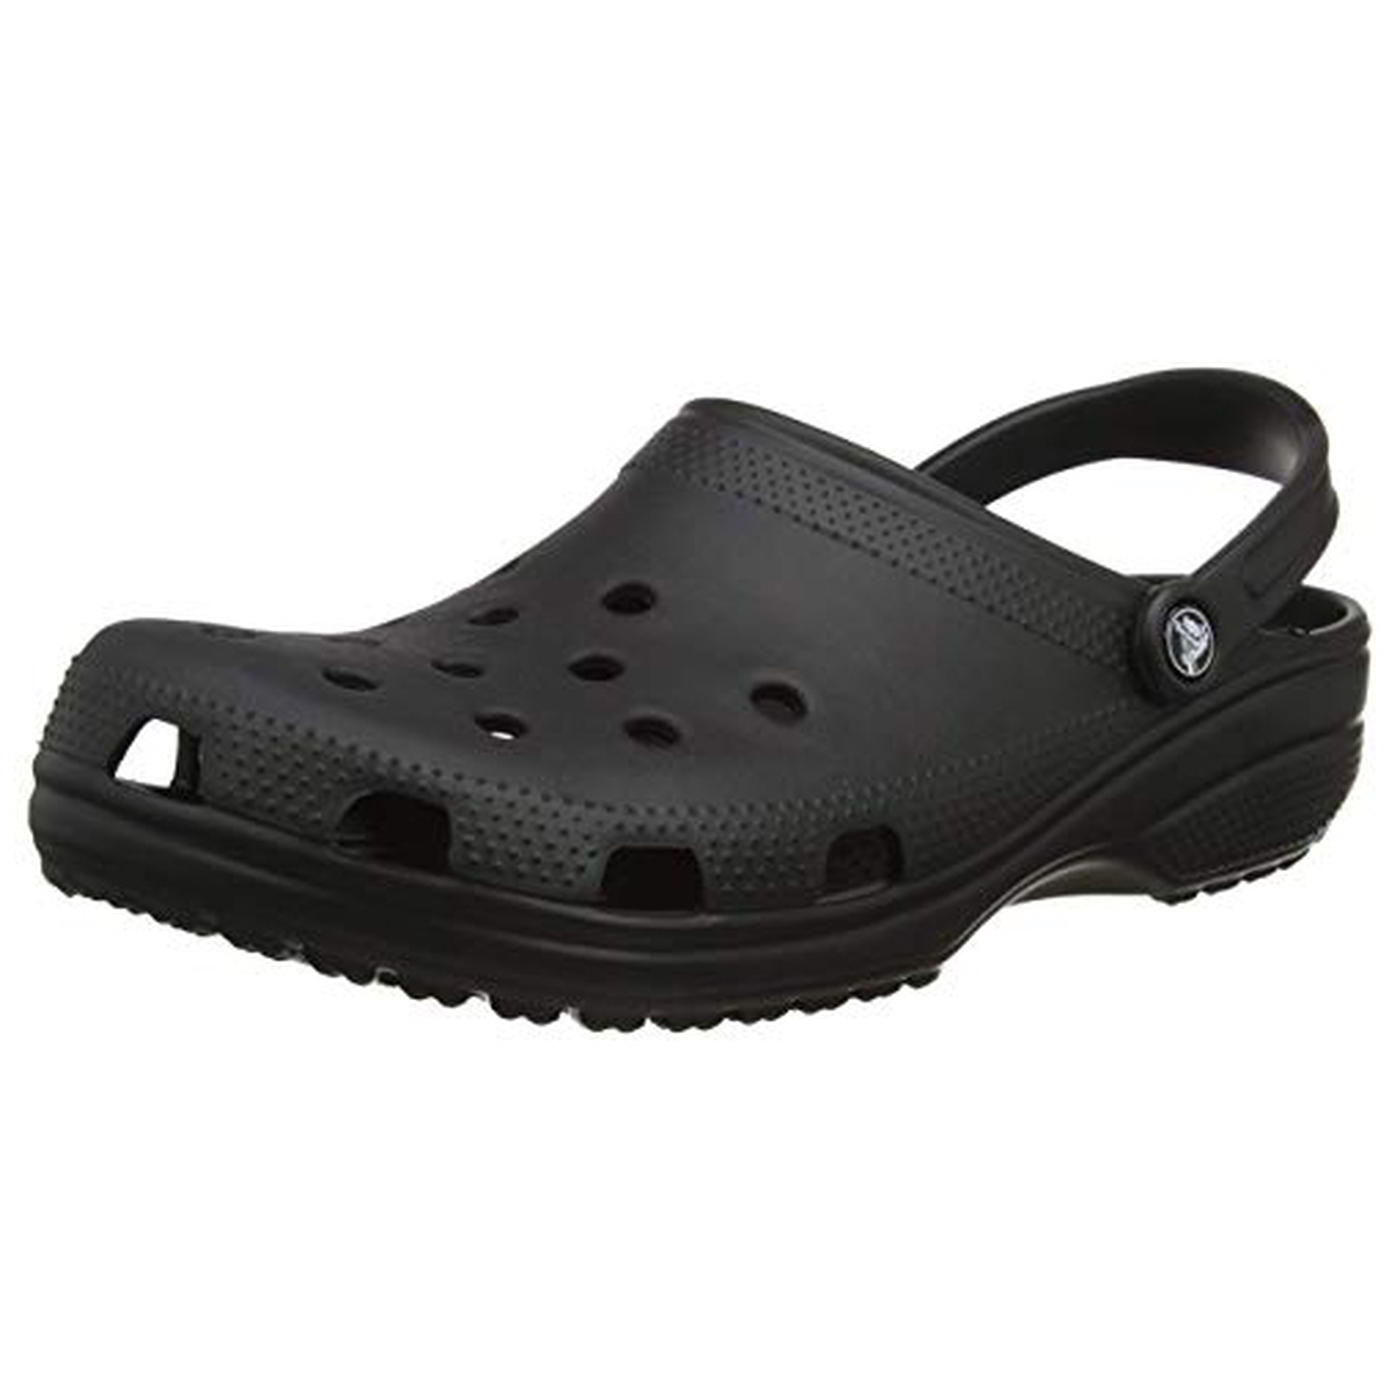 Crocs Mens Womens Classic Clog Vegan Work Shoes Sandals - Black 2951